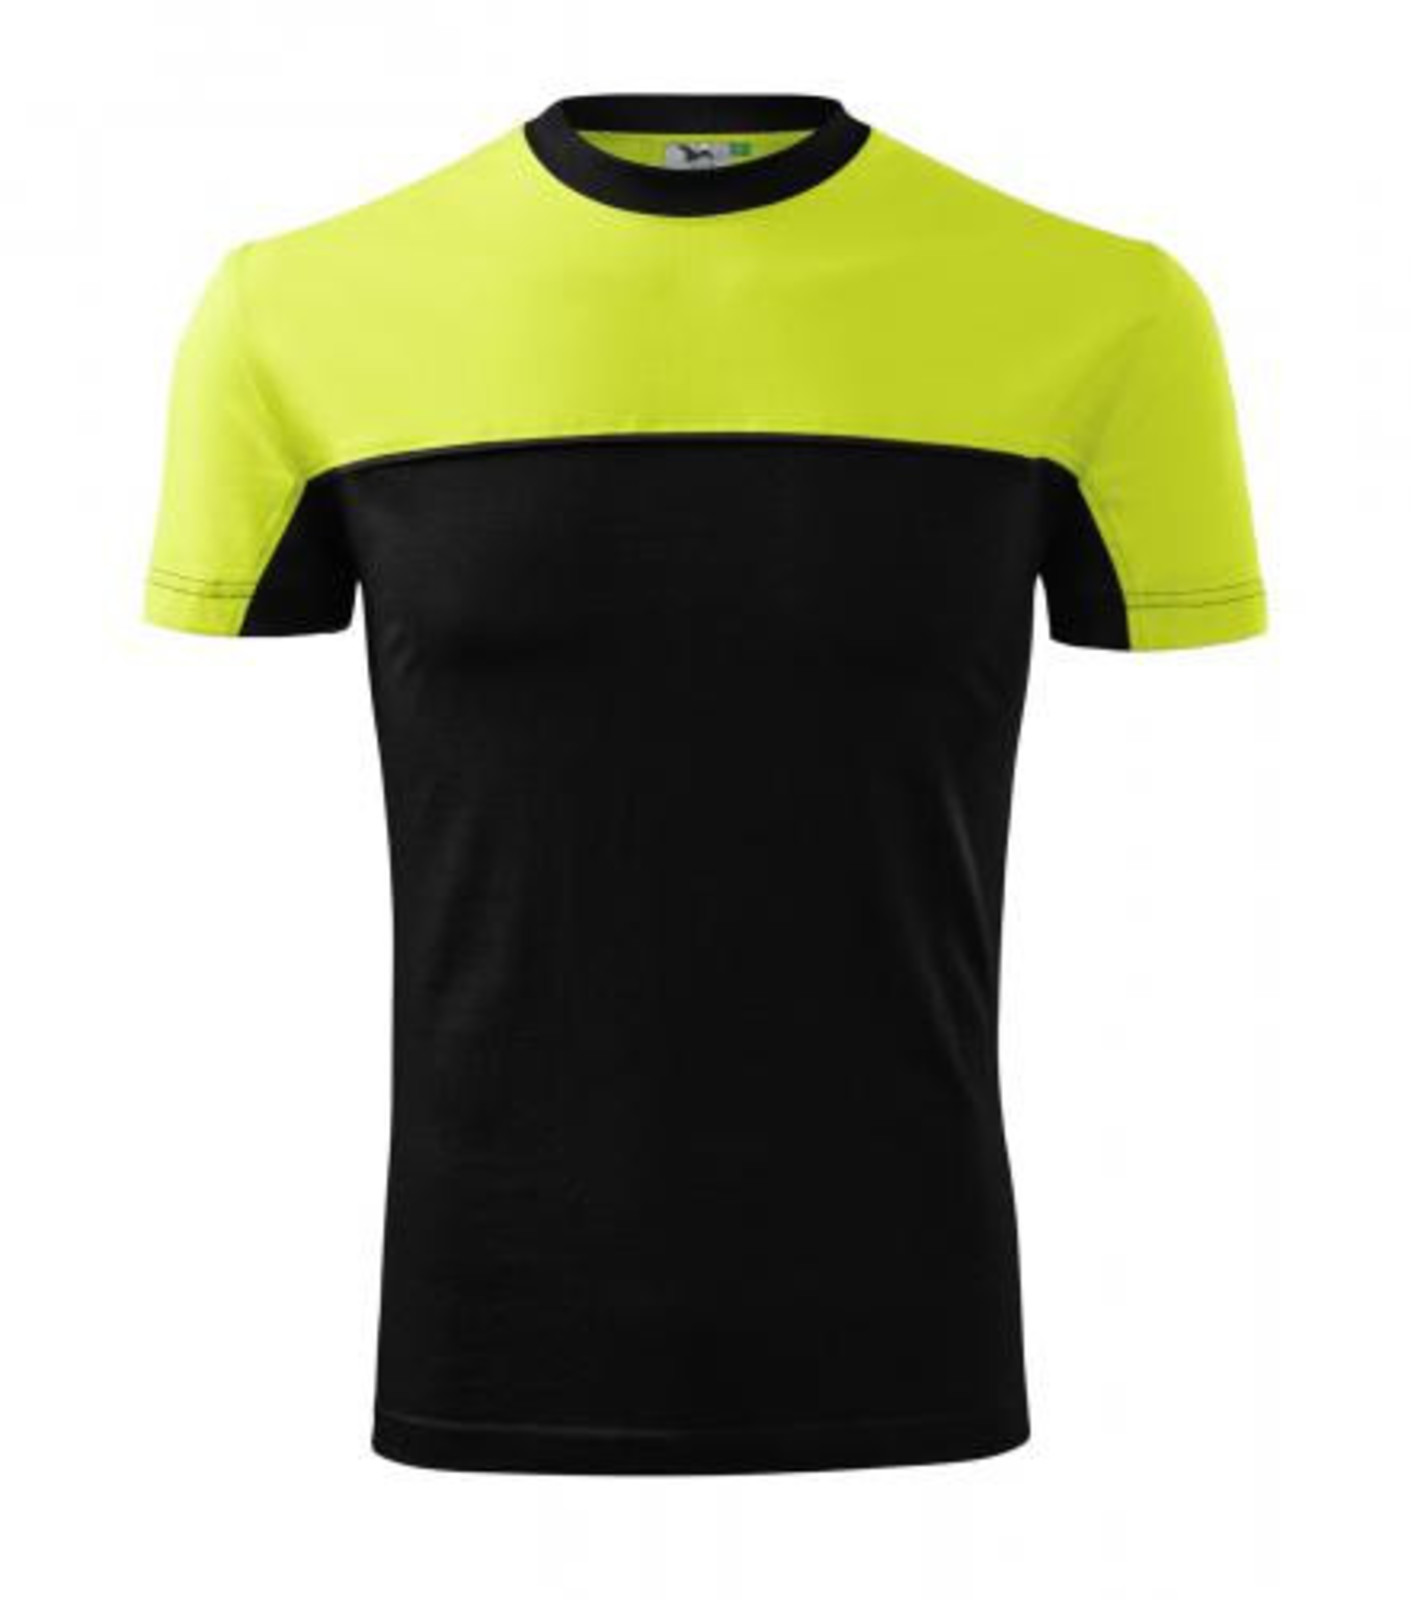 Unisex tričko Rimeck Colormix 109 - veľkosť: 4XL, farba: limetková/čierna